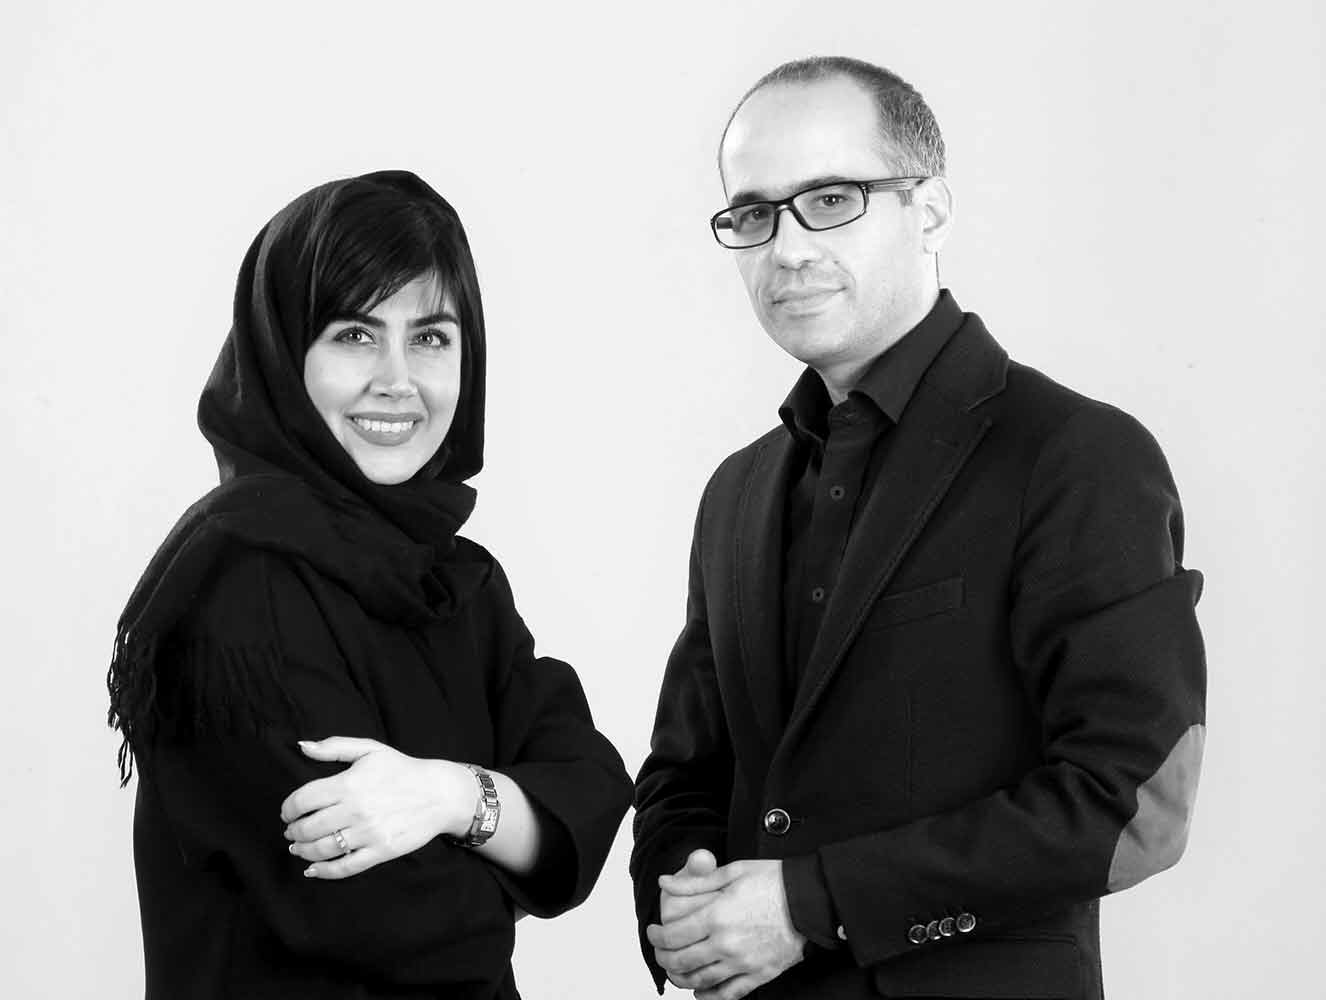 سارا کلانتری از معماران معروف زن ایرانی است